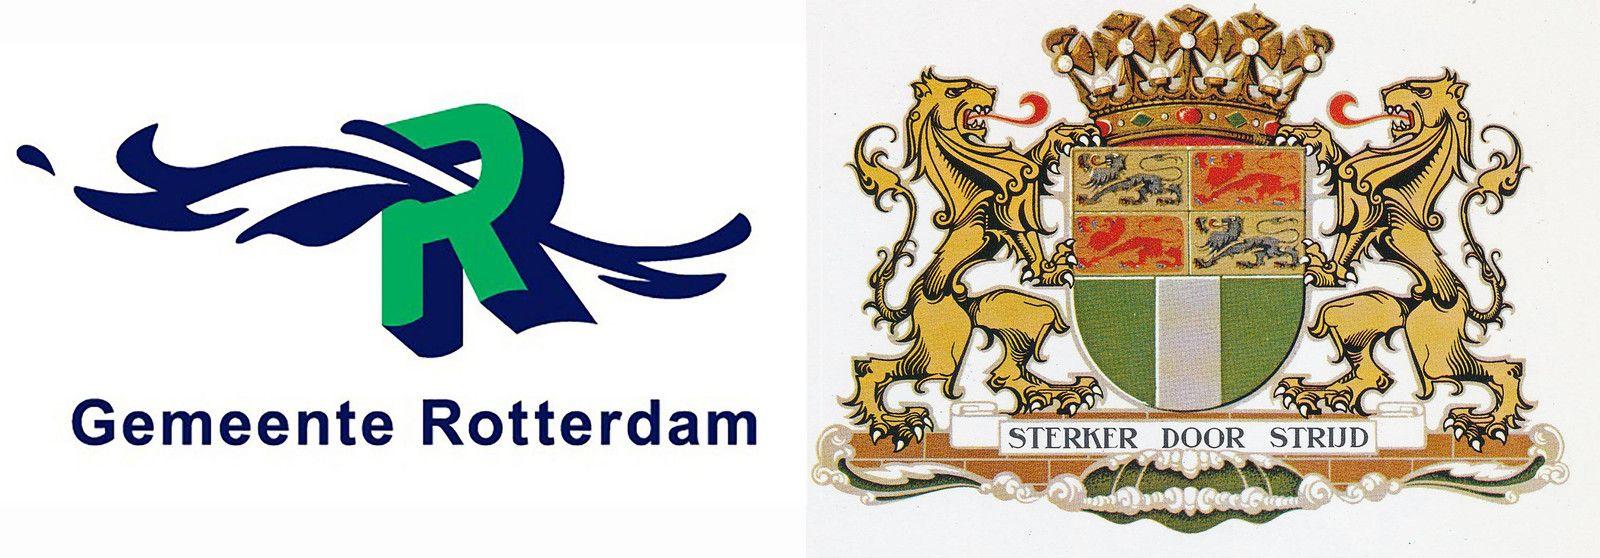 Rotterdam Logo - Oersterk stadswapen moet nieuwe logo Rotterdam zijn' | Rotterdam | AD.nl